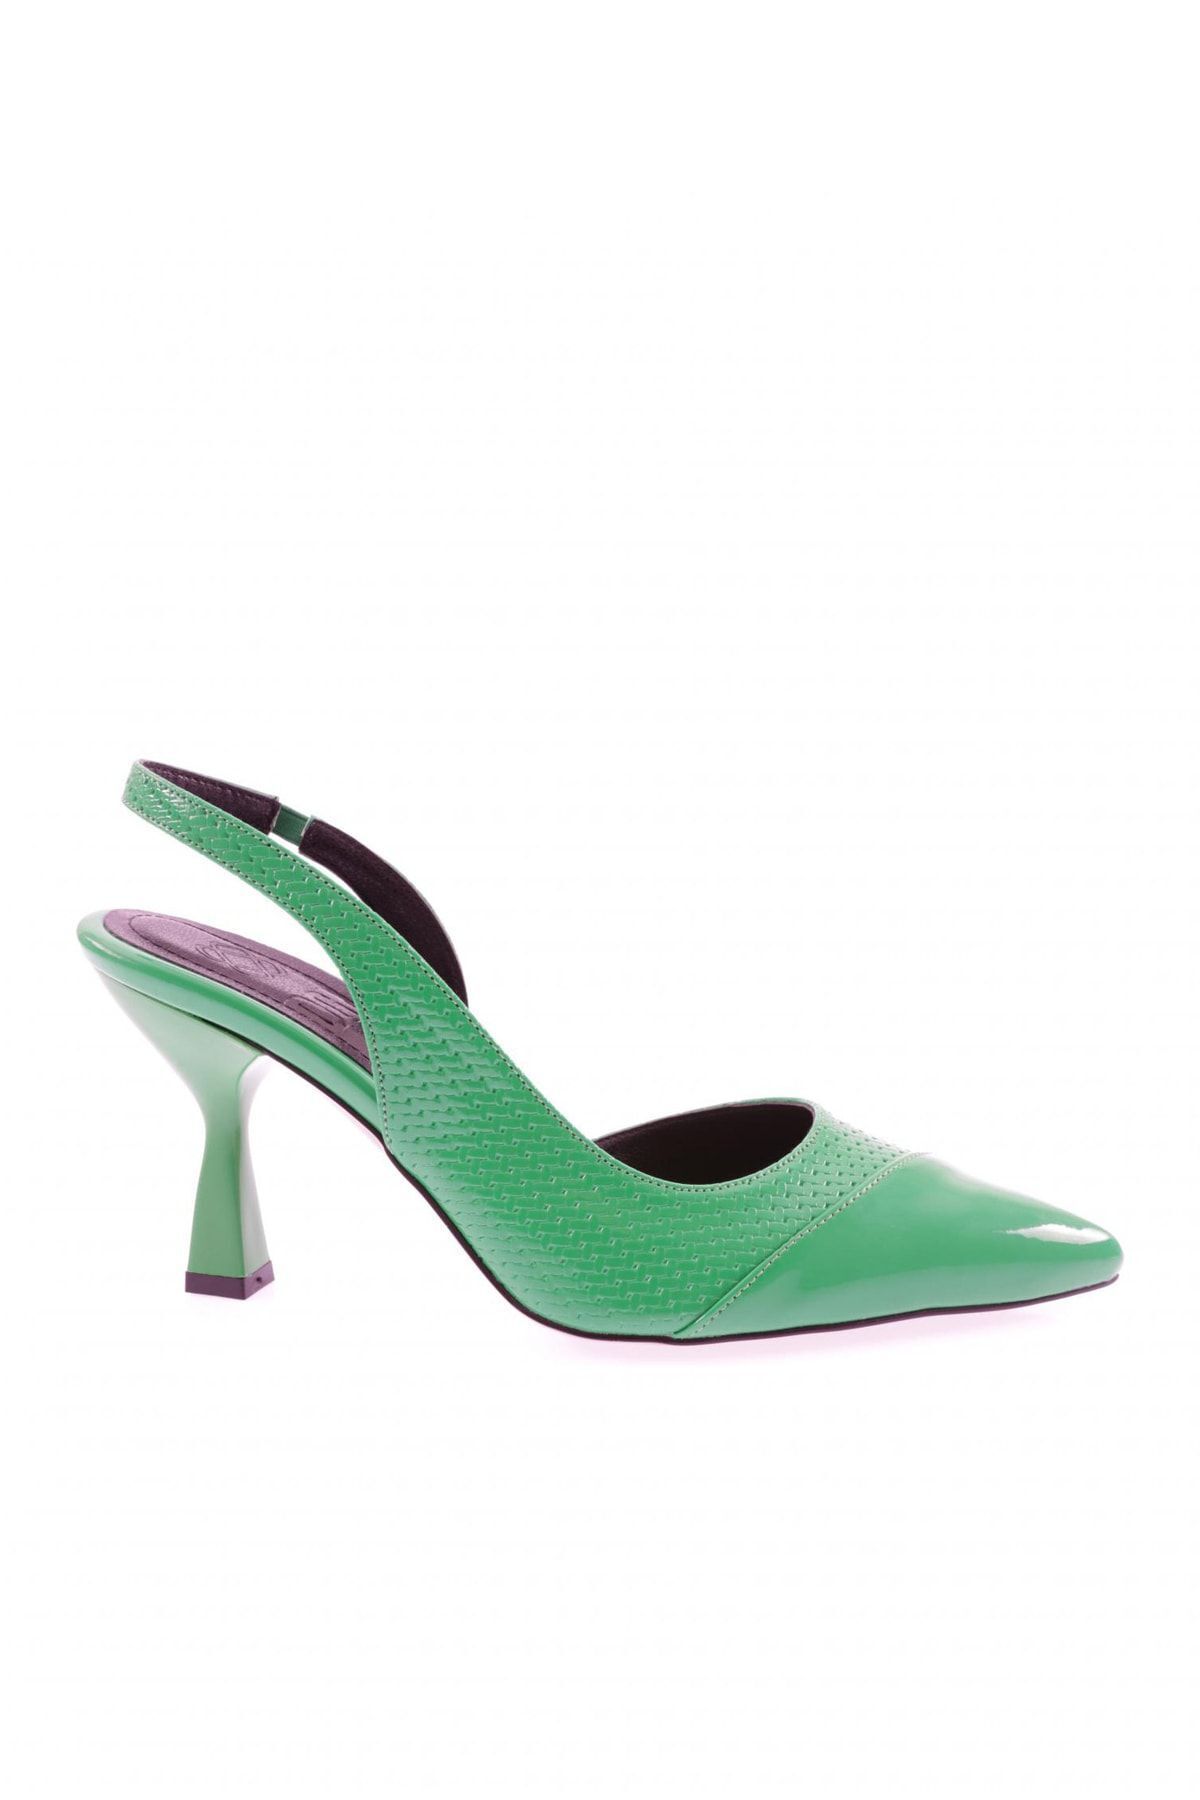 Dgn 04-23y Kadın Ince Topuklu Ayakkabı Yeşil Rugan Baskılı